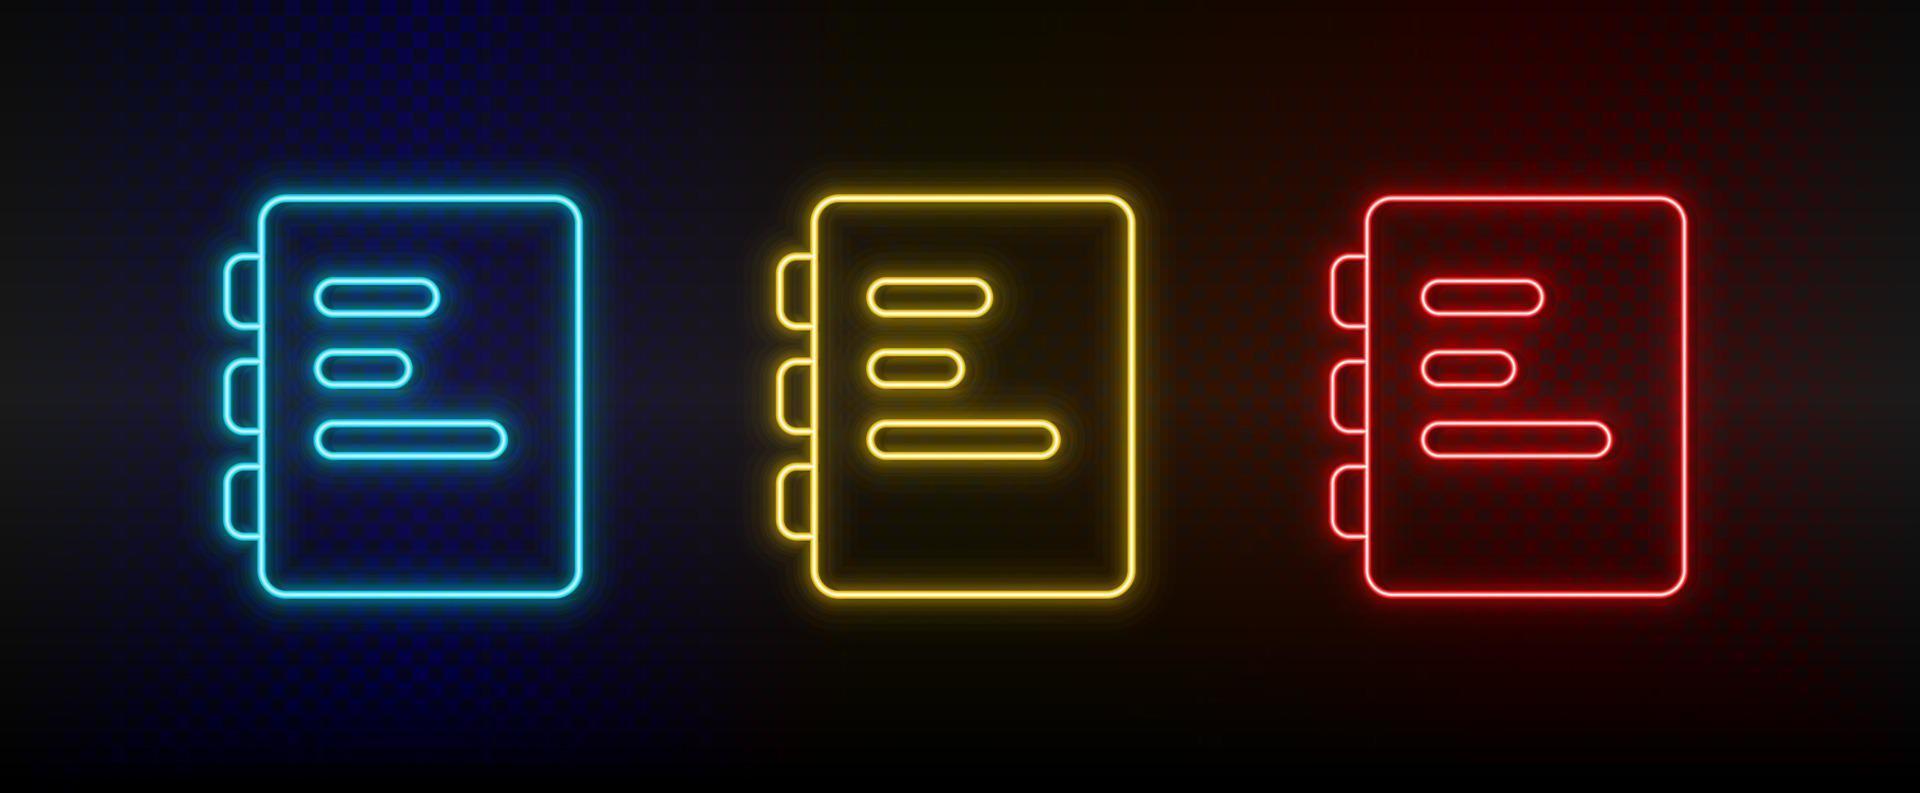 Neon- Symbole, dokumentieren. einstellen von Rot, Blau, Gelb Neon- Vektor Symbol auf verdunkeln transparent Hintergrund